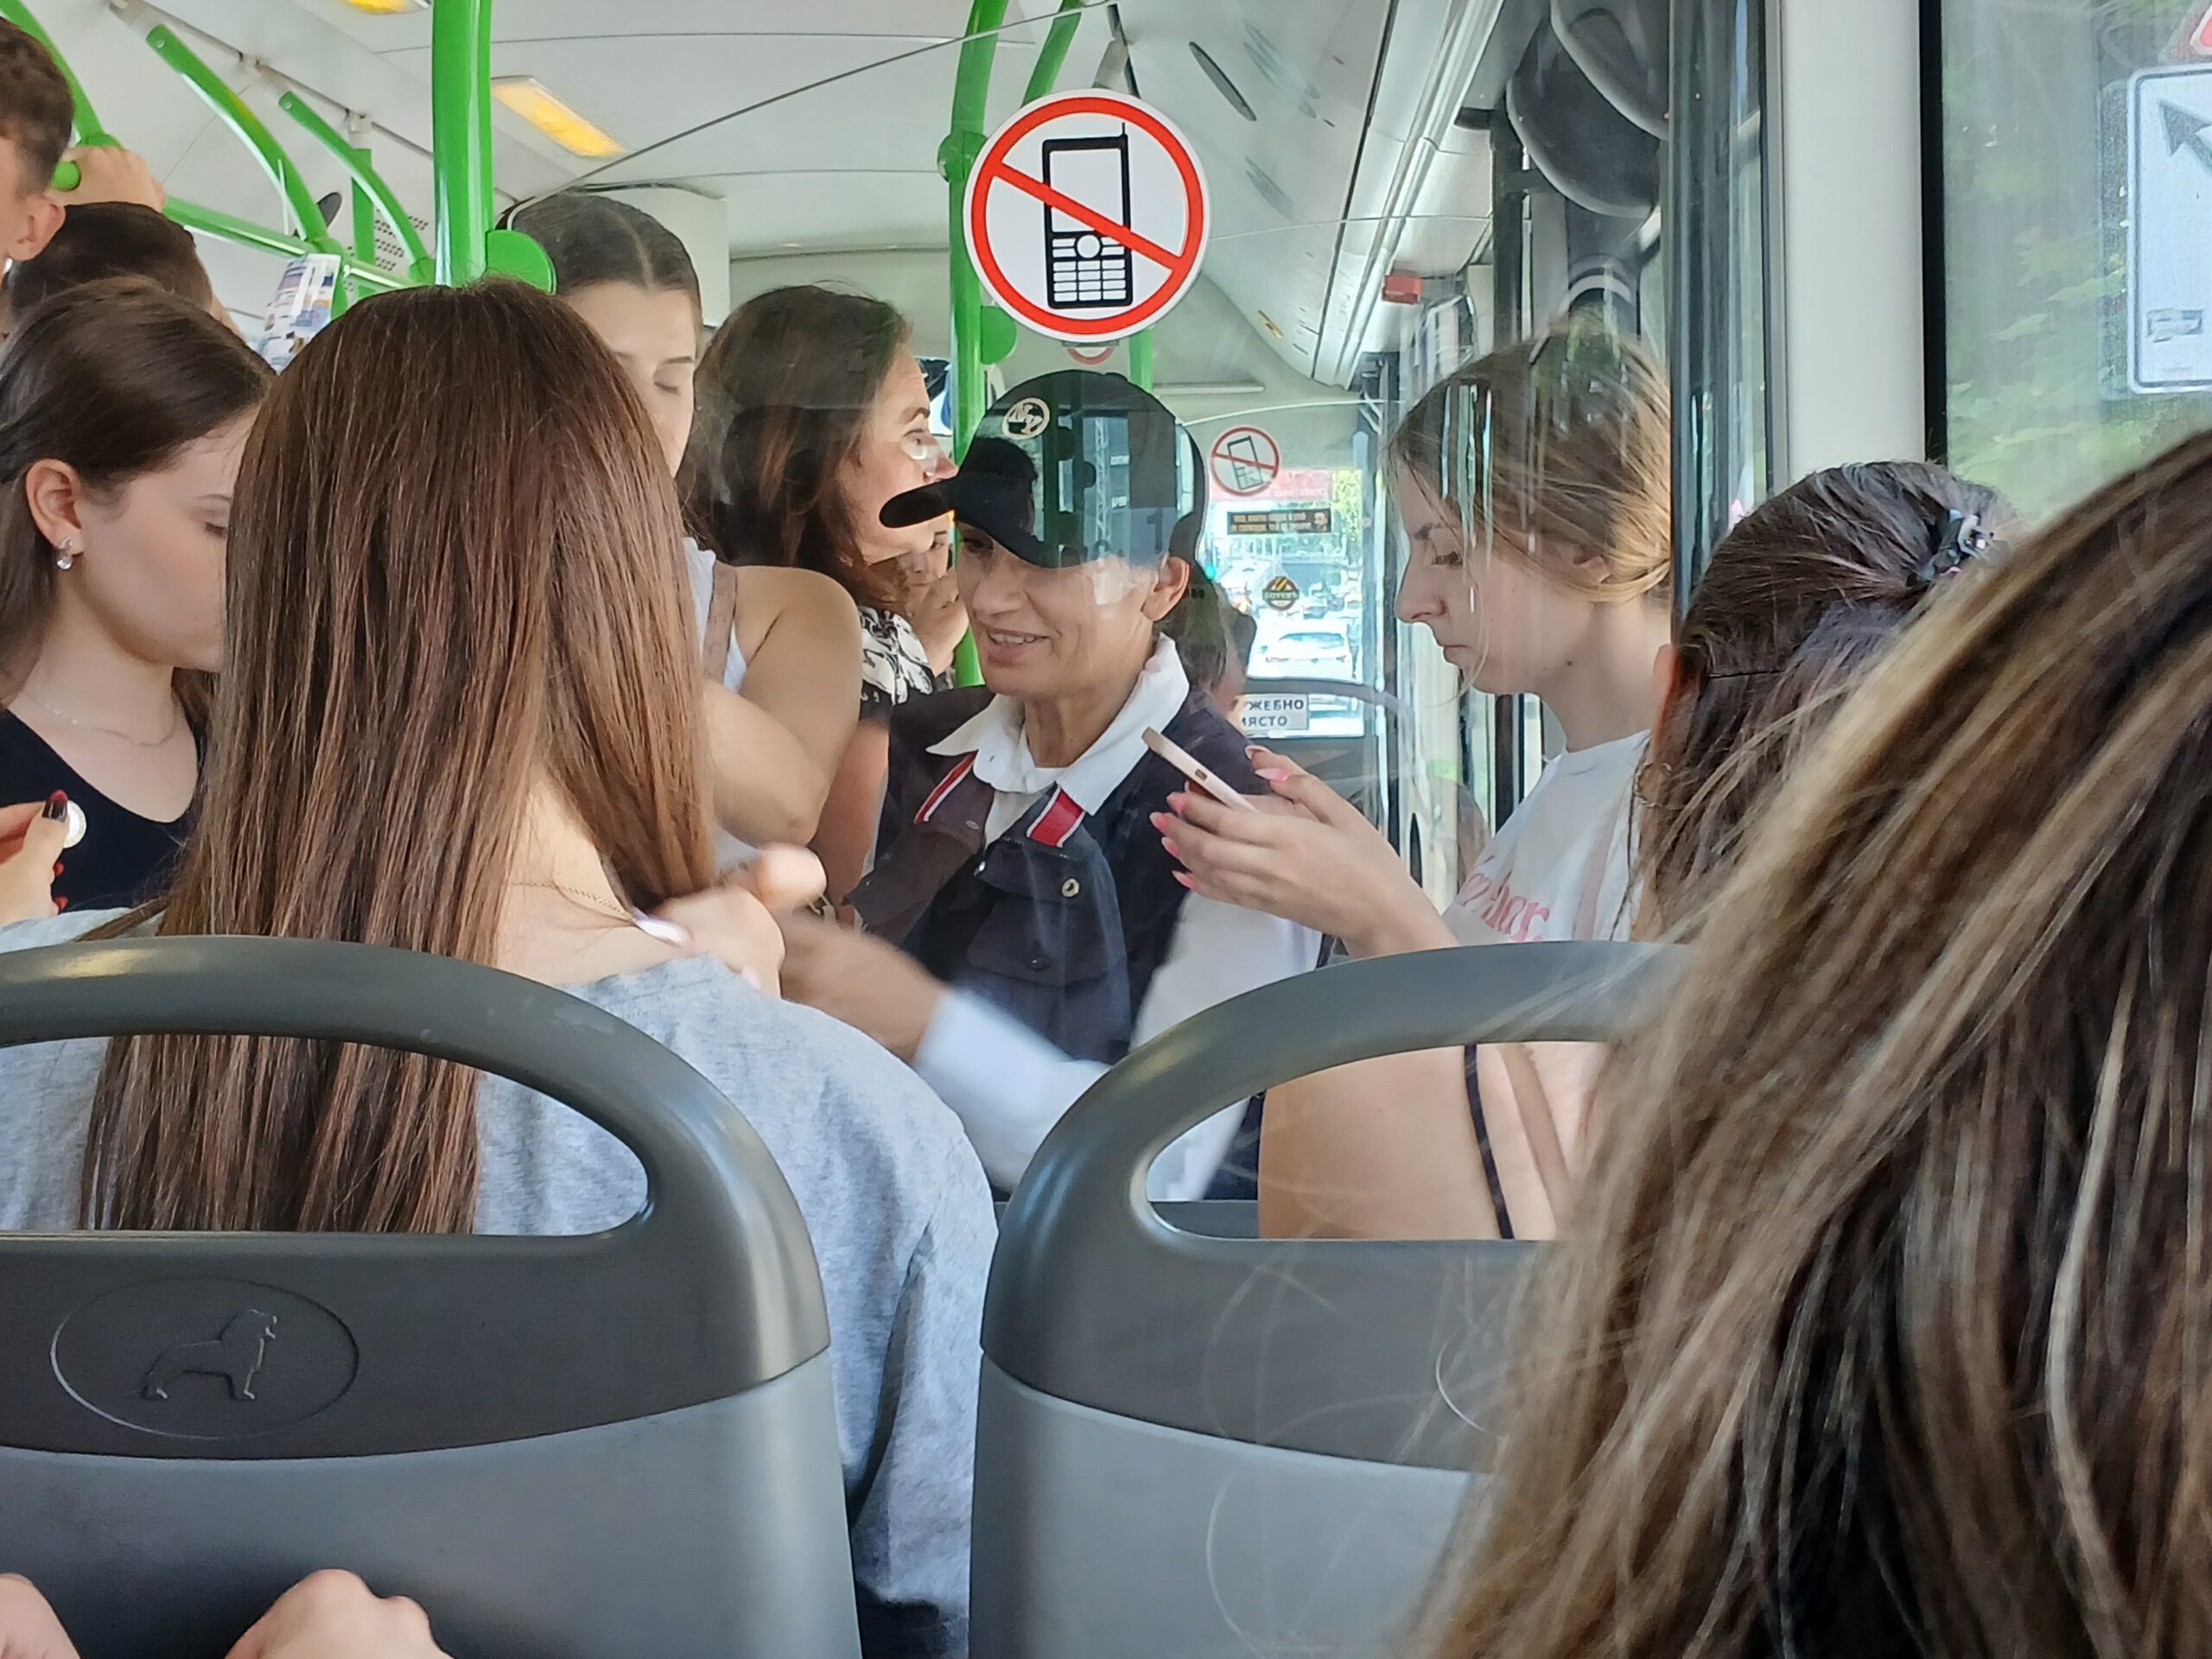 СподелиЕдна вежлива кондукторка посреща пътниците в градския автобус по линия